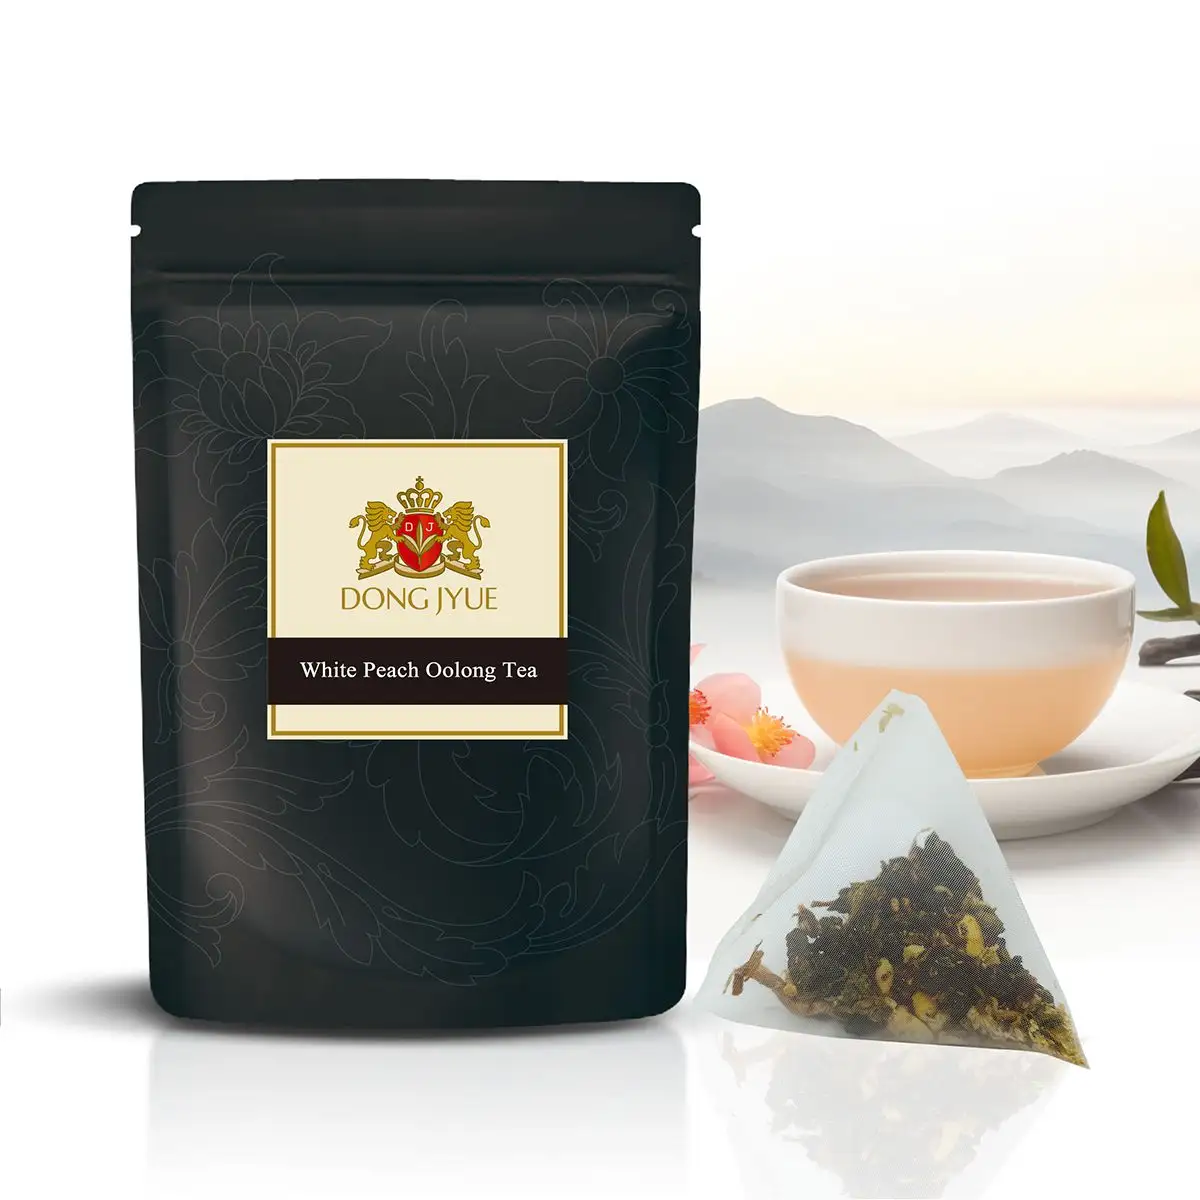 White Peach Oolong Tea Pyramid Tea bag